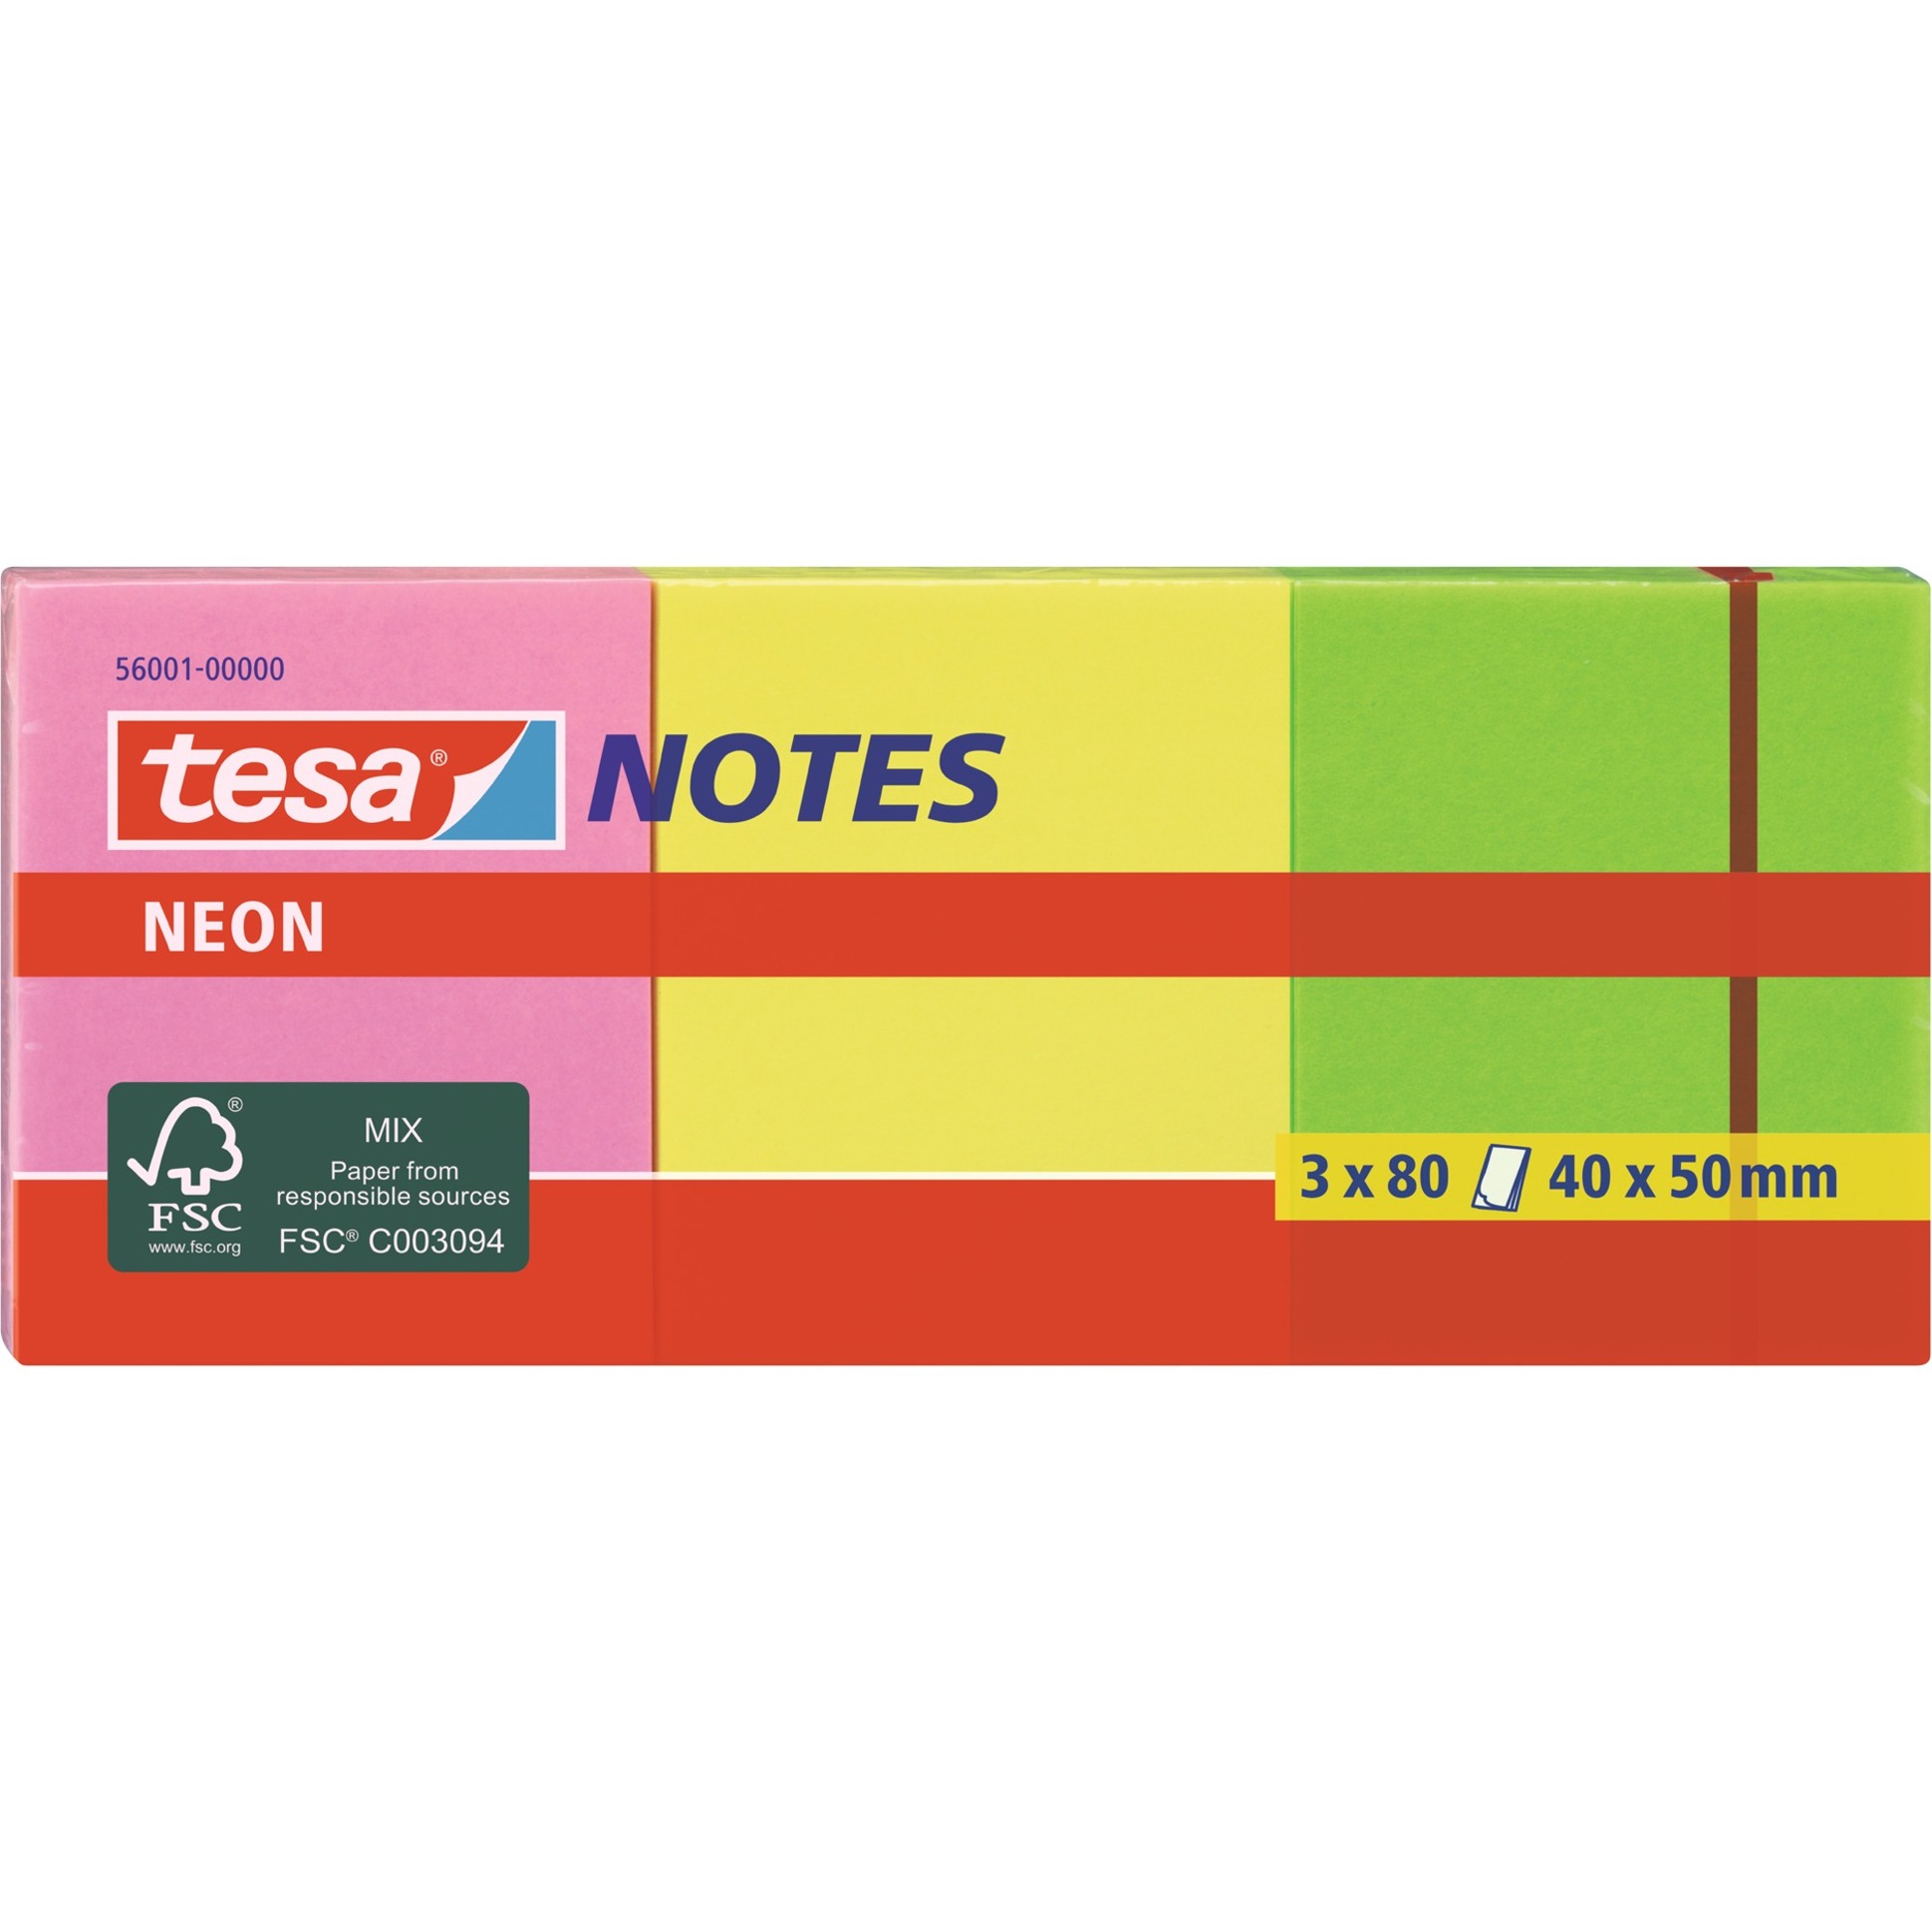 Image of Alternate - Neon Notes, 3 x 80 Blatt, Aufkleber online einkaufen bei Alternate